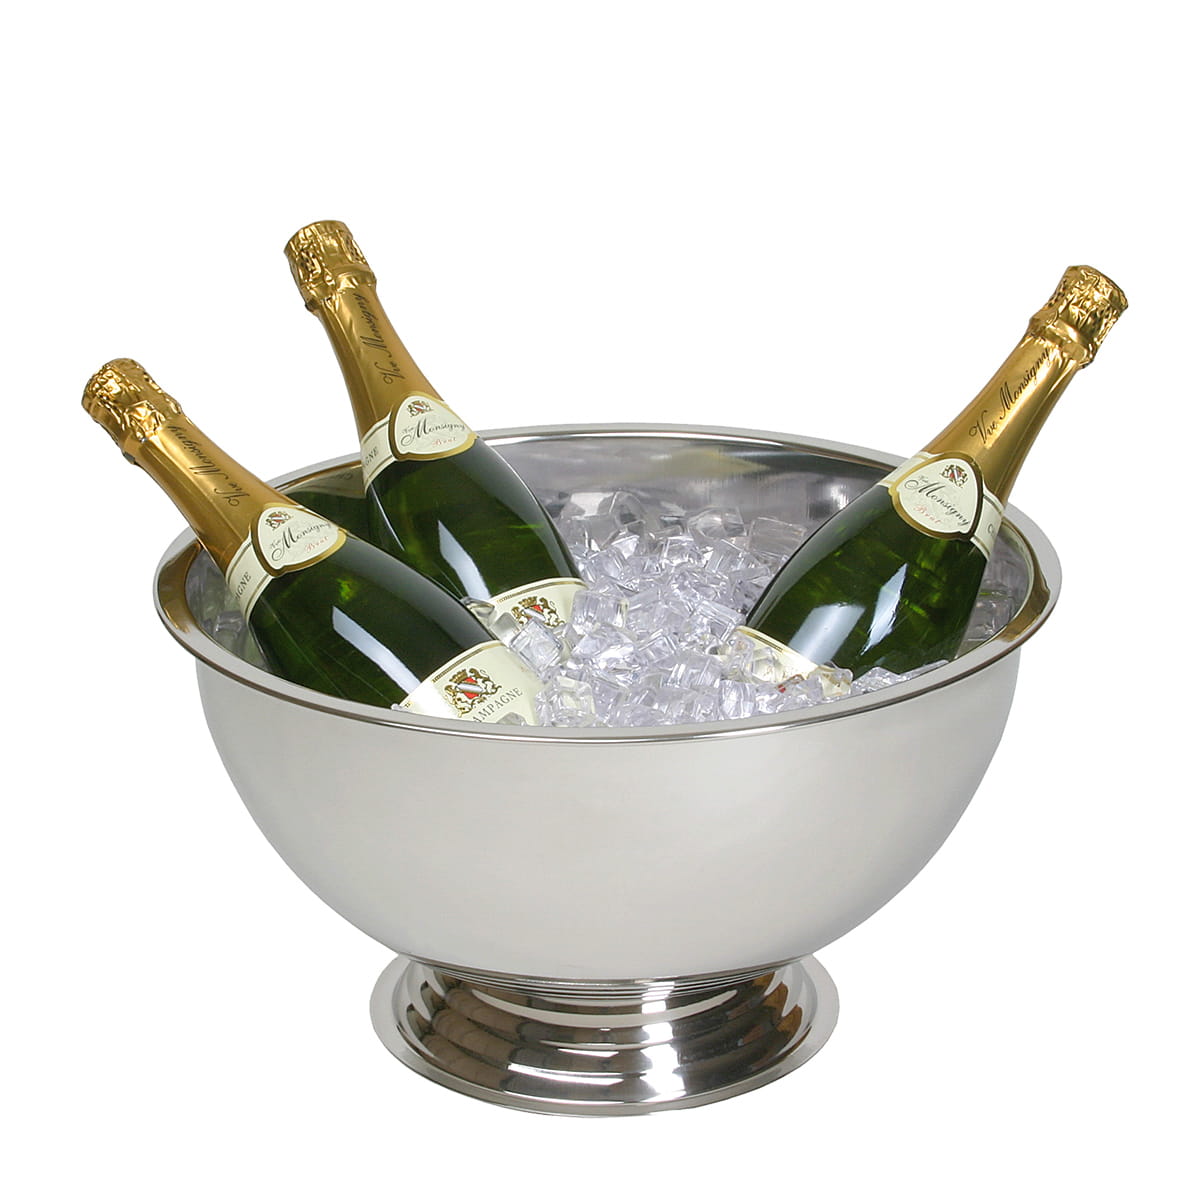 Große Champagnerschale aus Edelstahl mit Sockel für mehrere Flaschen und Eis